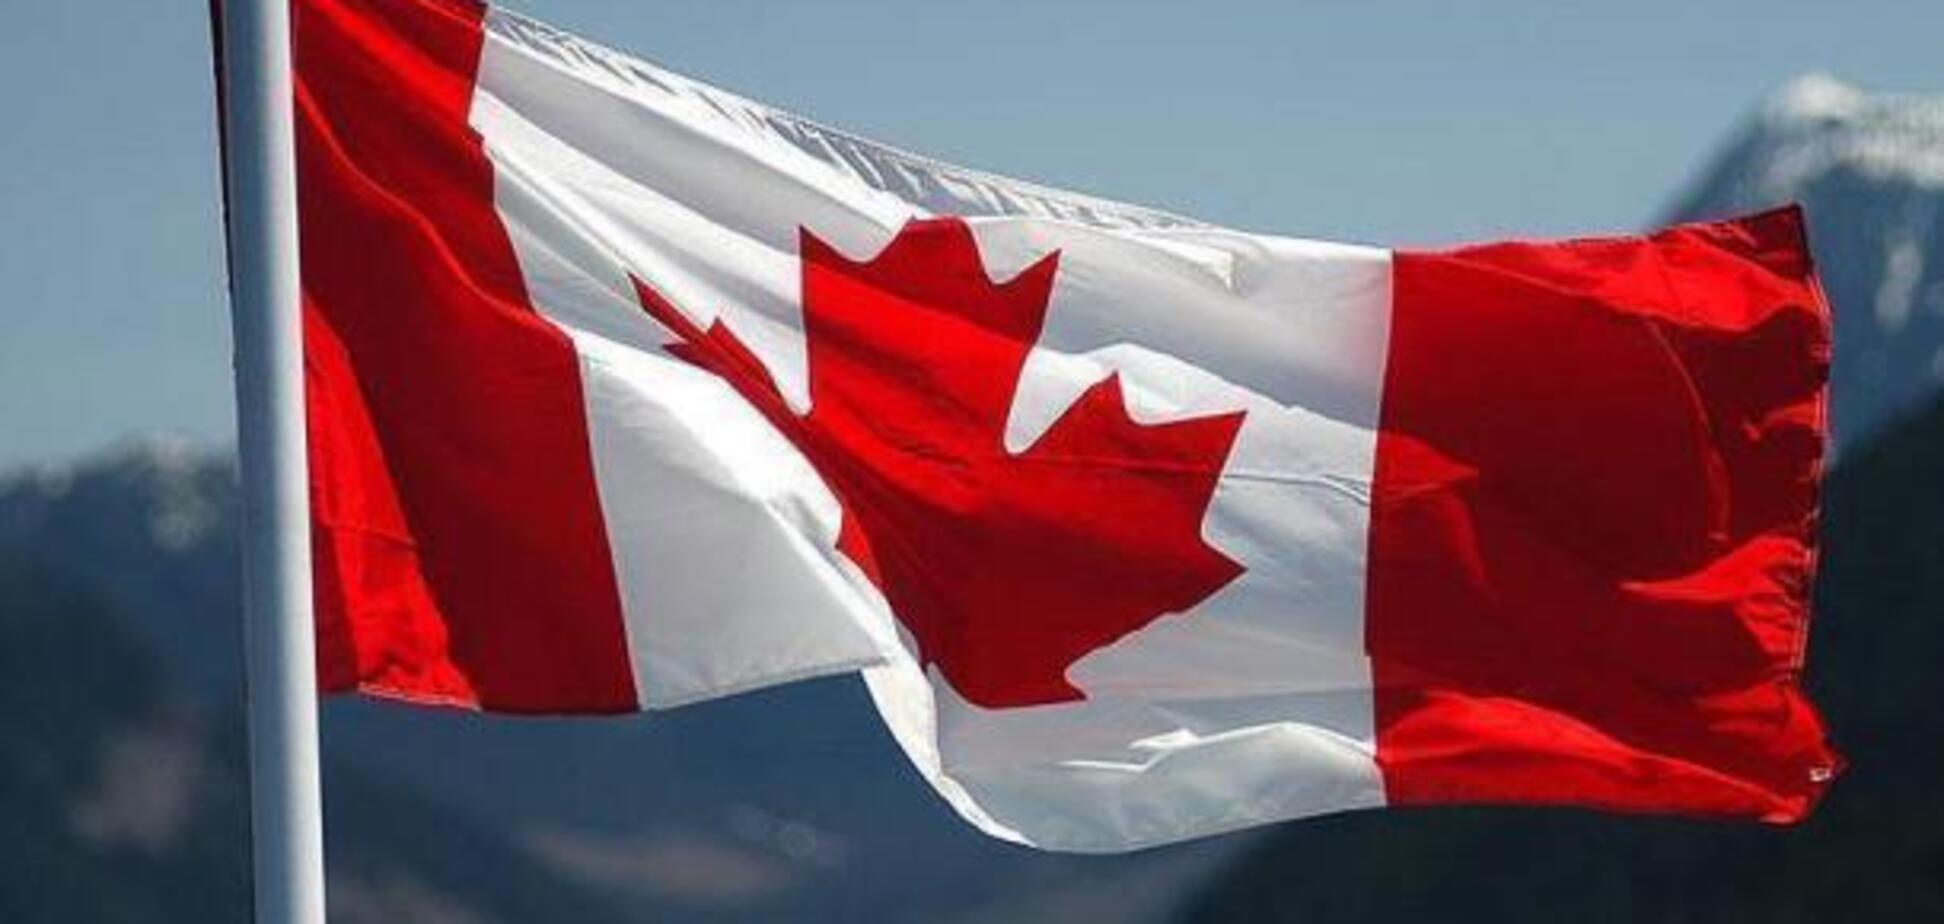 'Адский ад': в сети запустили фейк о трагедии в Канаде